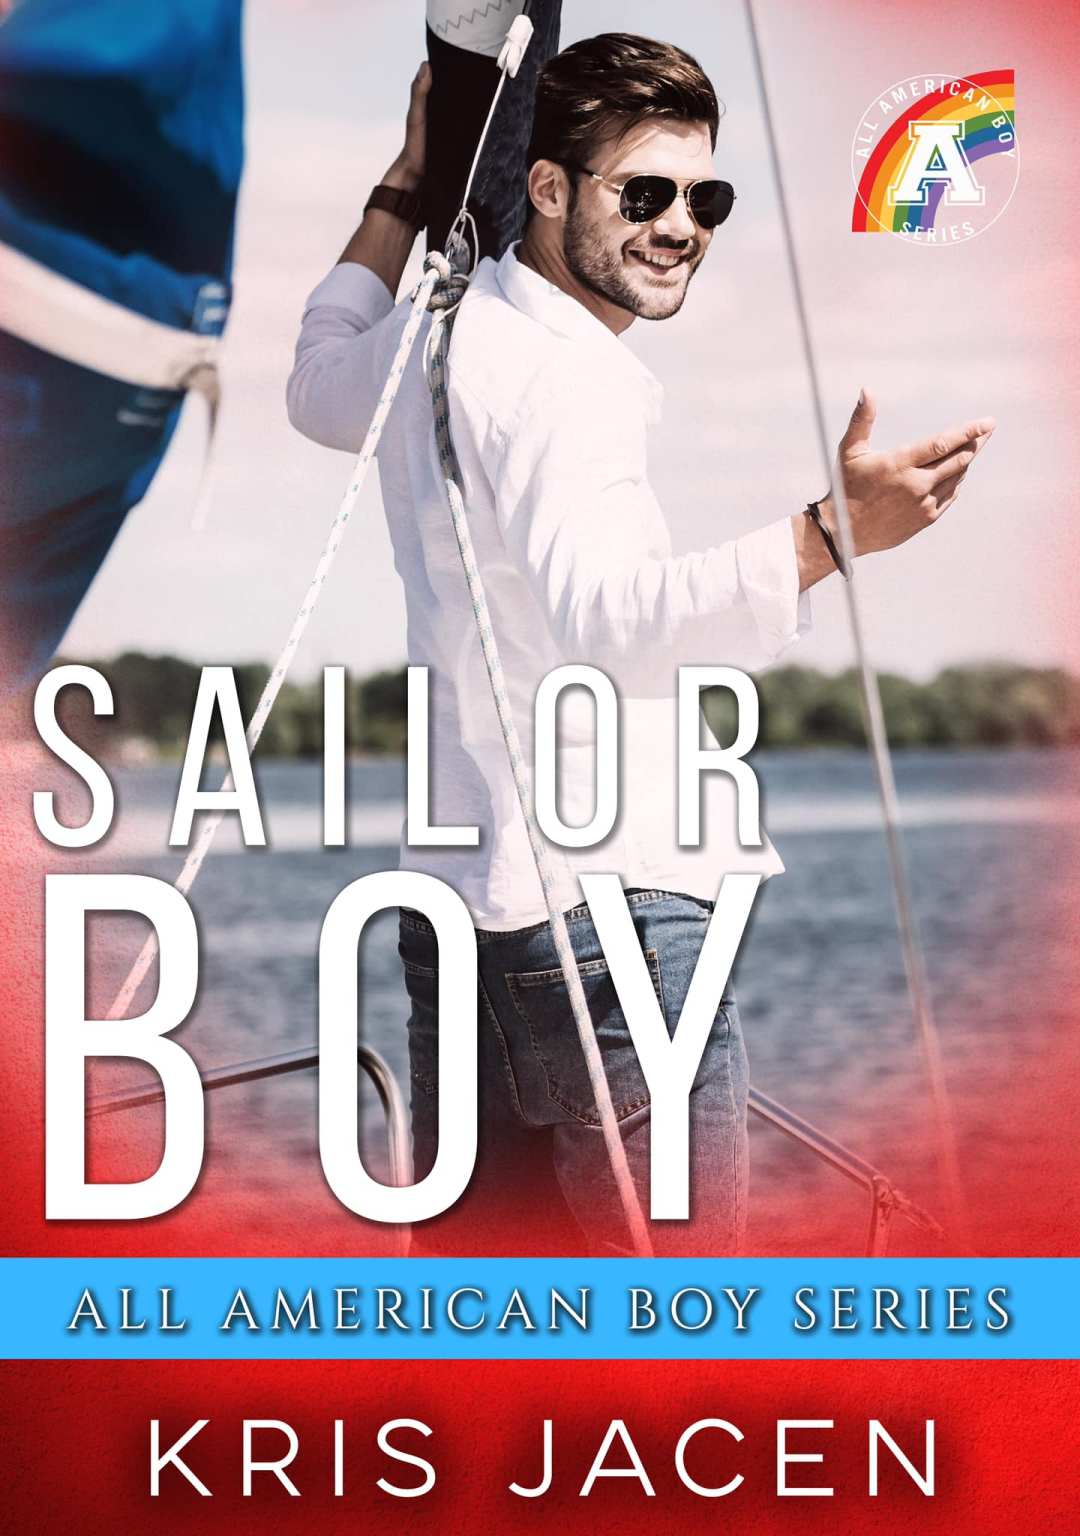 Sailor Boy Kris Jacen